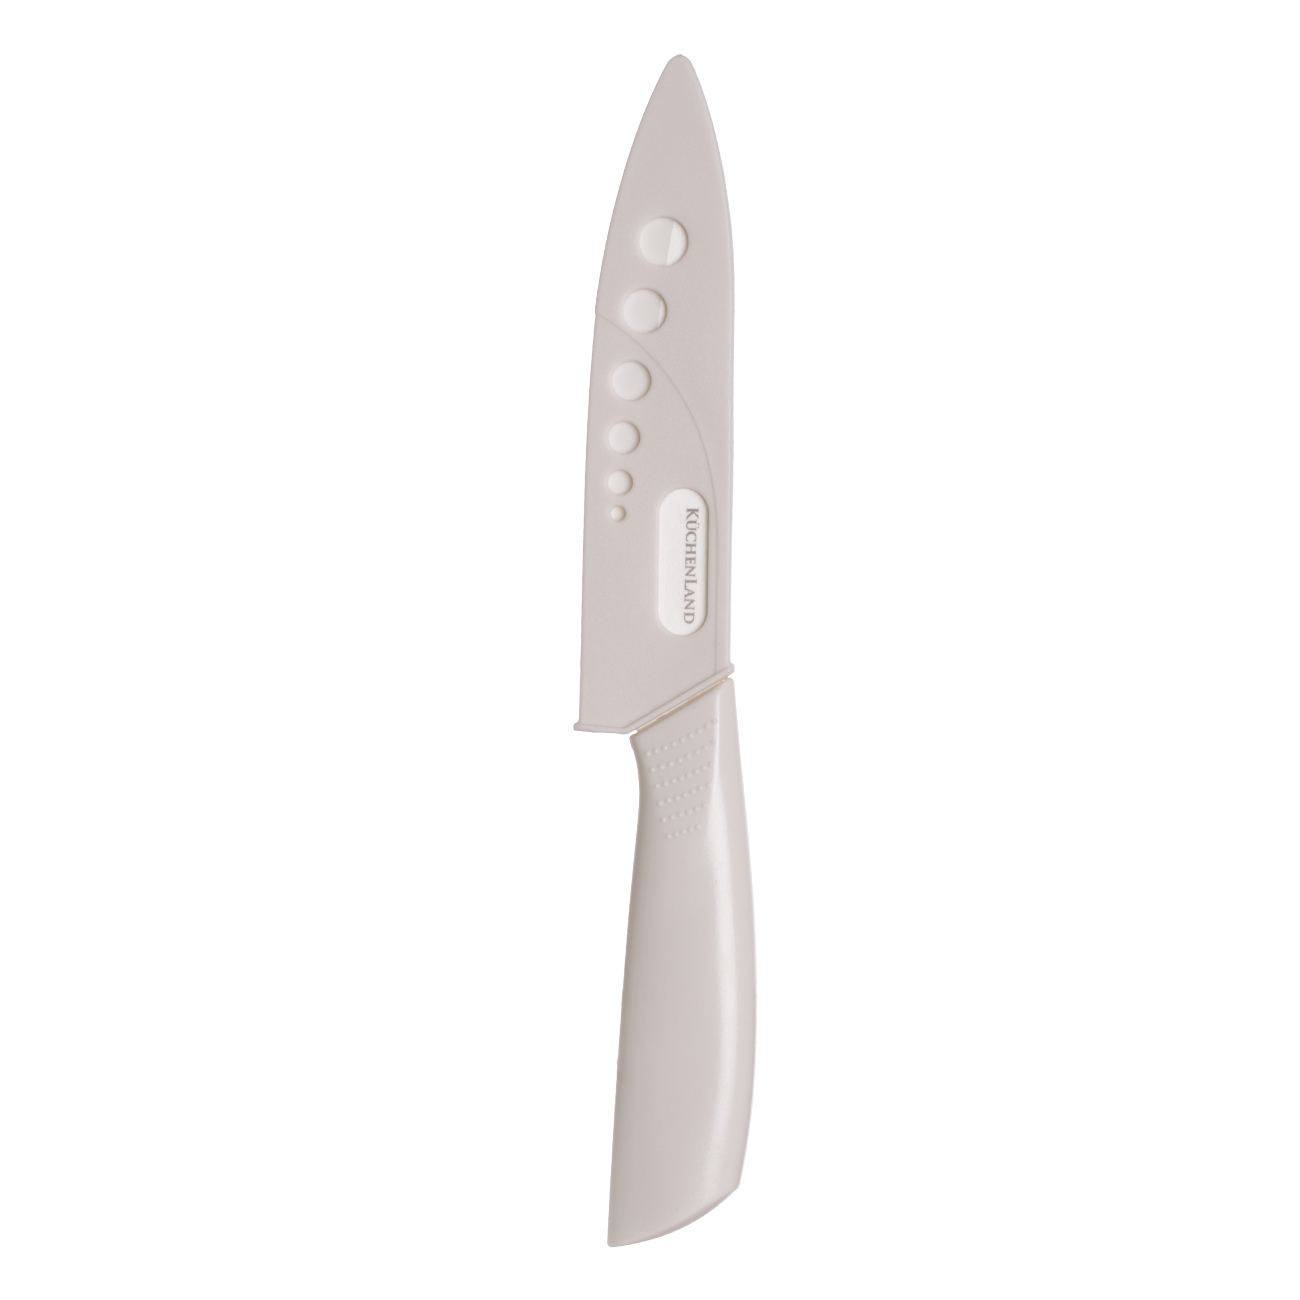 Нож для чистки овощей, 10 см, с чехлом, керамика/пластик, молочный, Regular изображение № 3